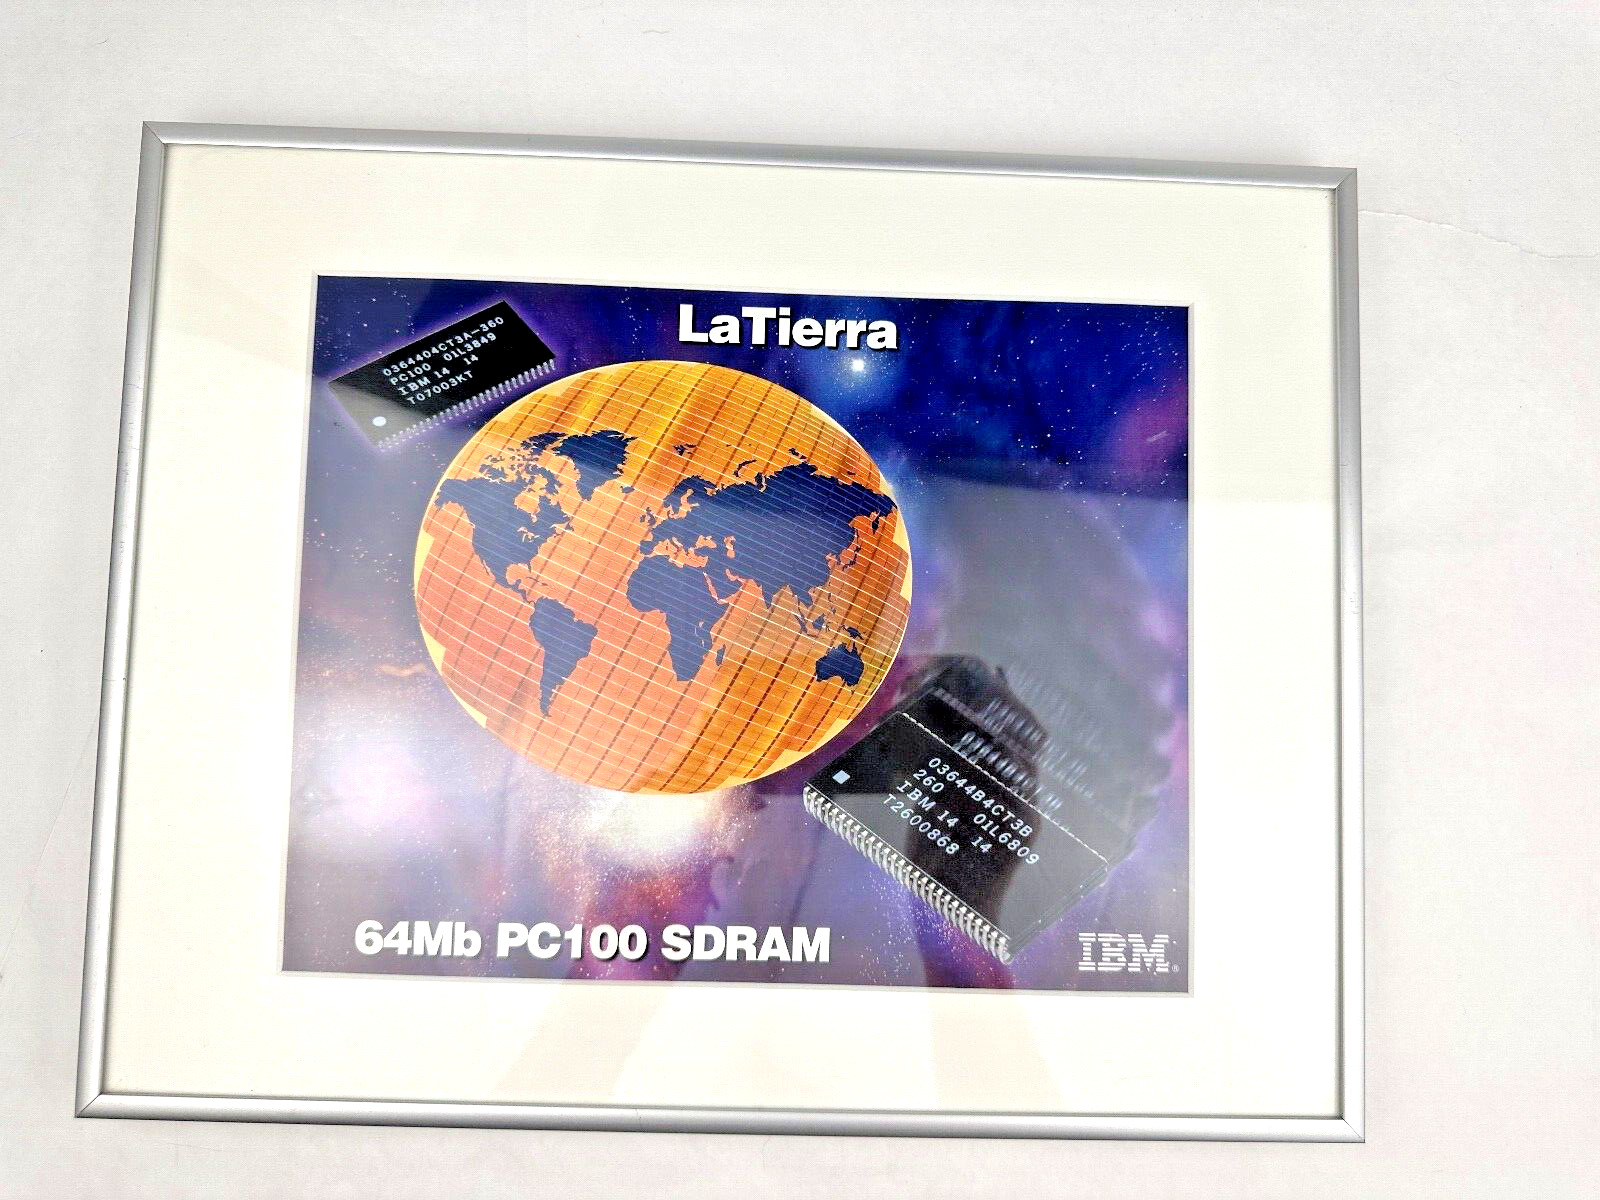 Vintage Framed IBM Promotional Print for LaTierra 64MB PC100 SDRAM Computer Chip